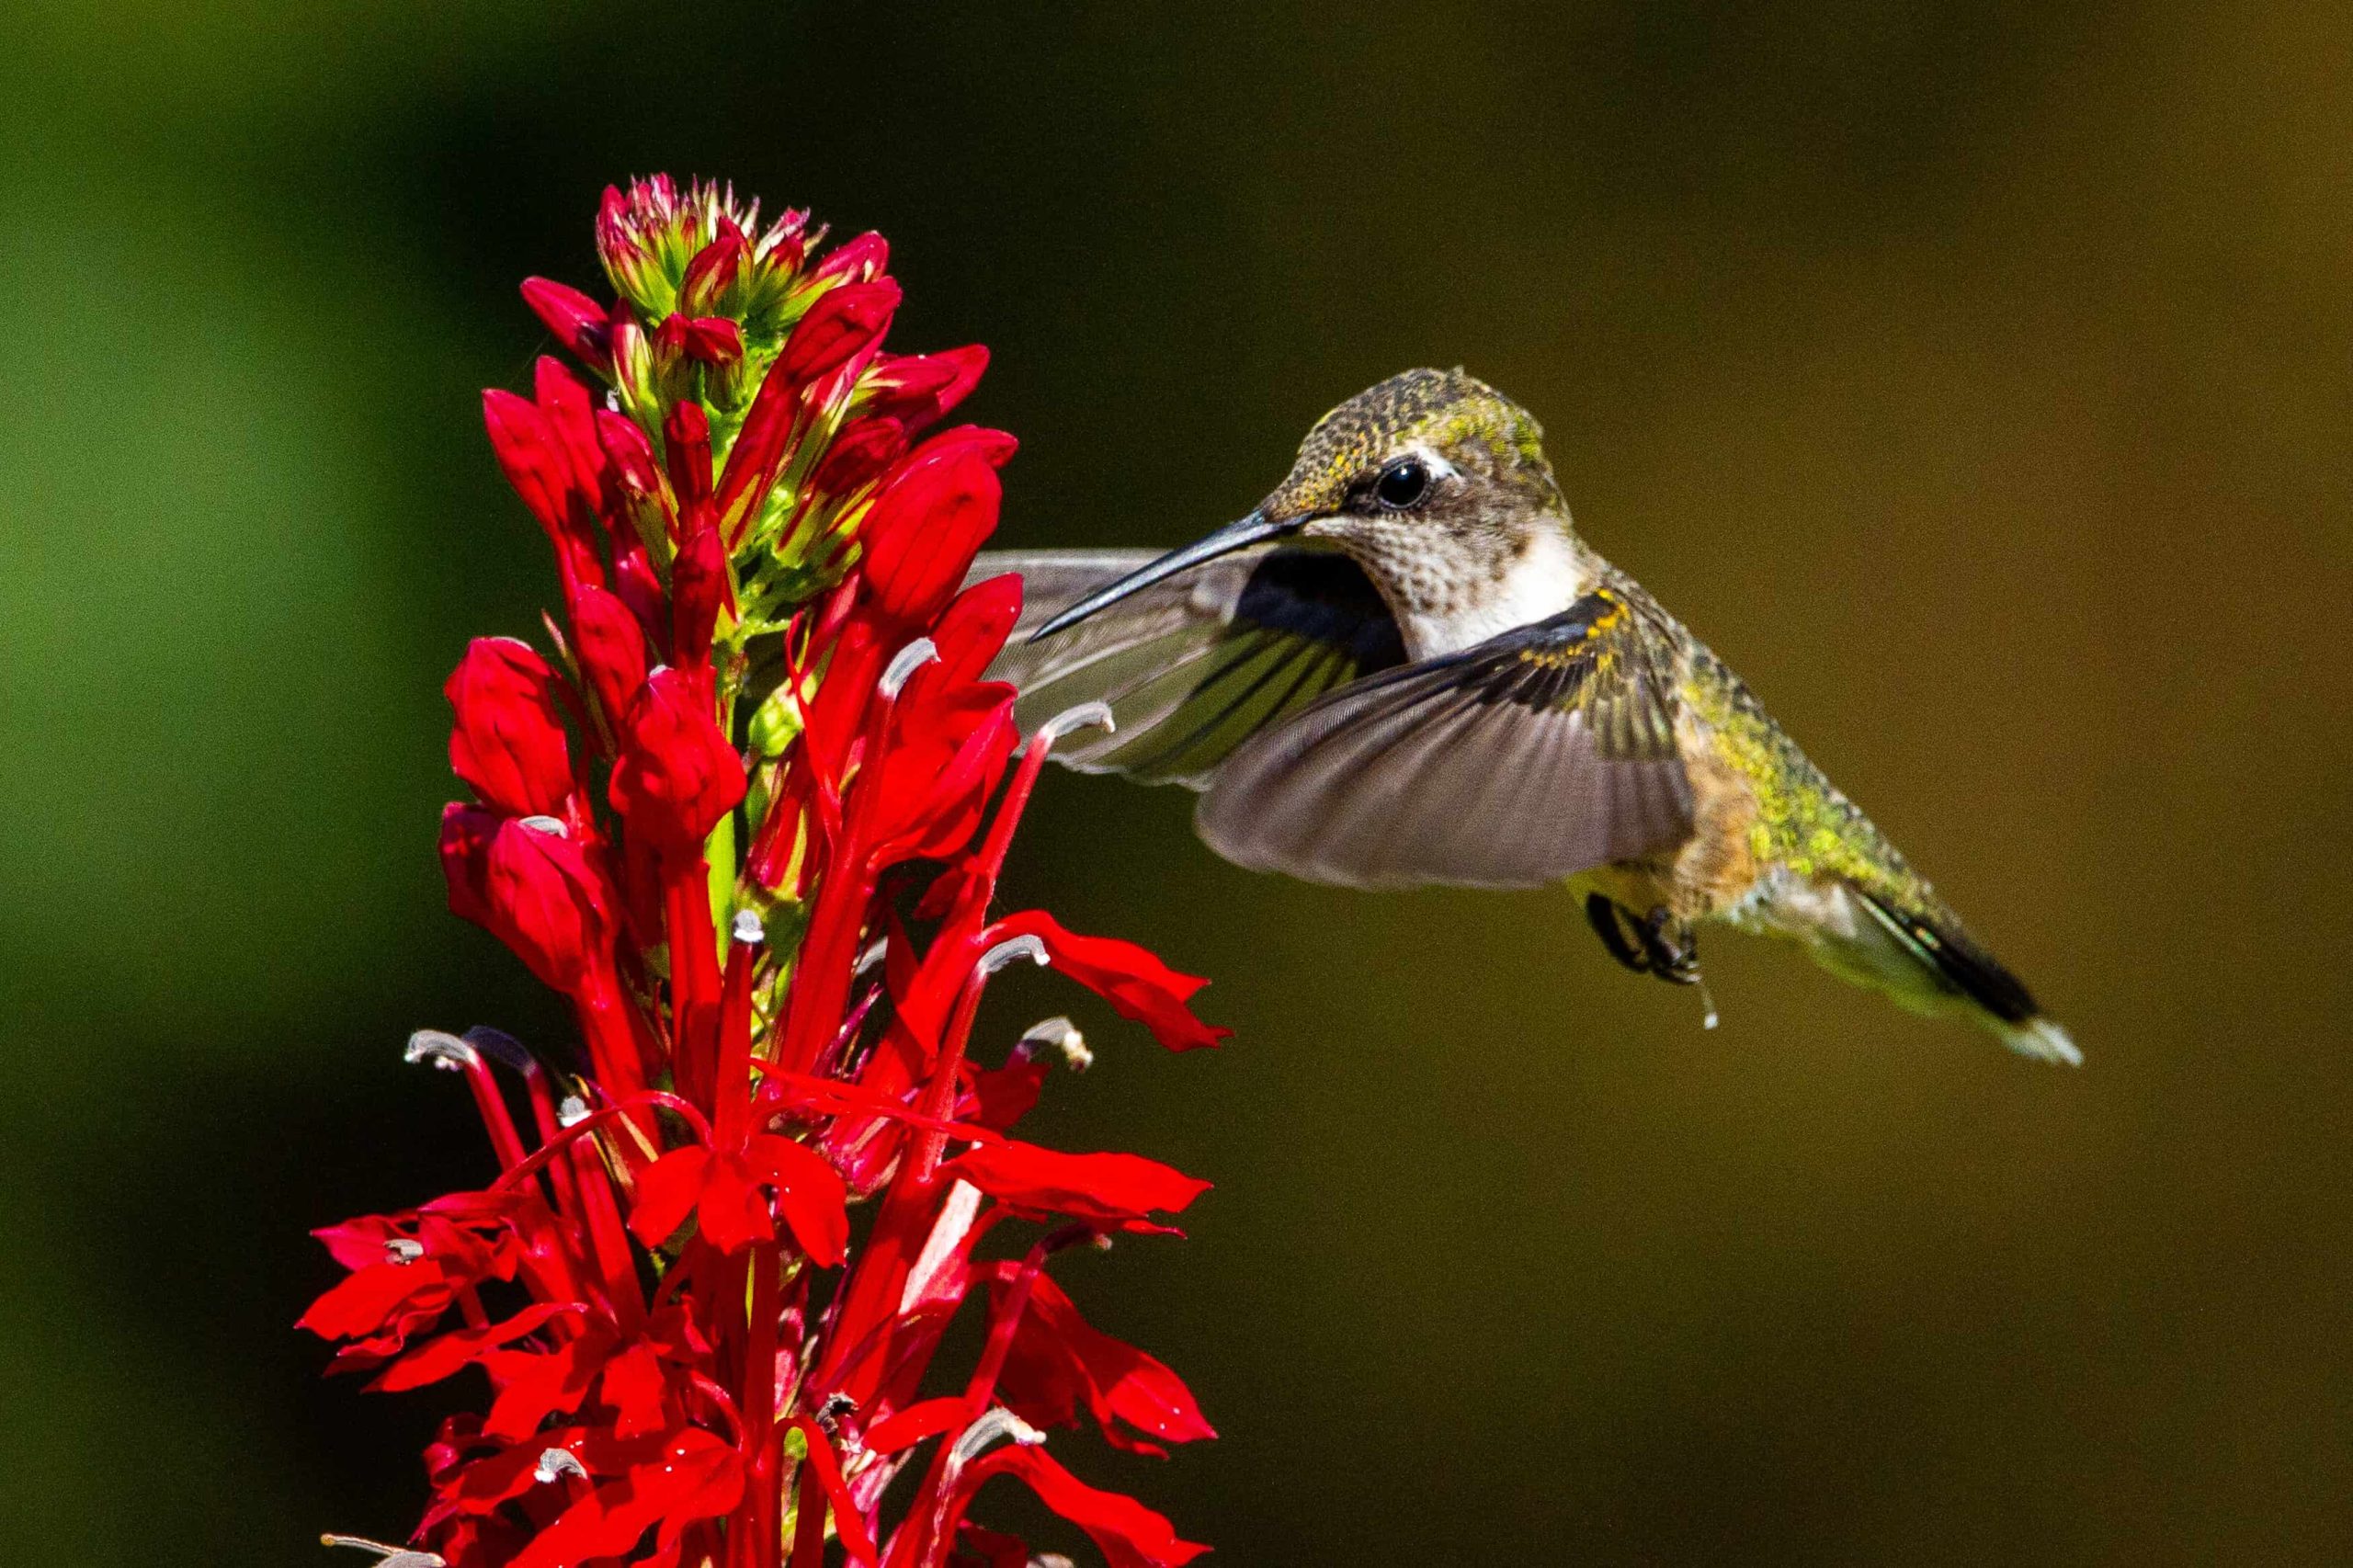 colibrí de garganta rubí bebiendo néctar de una flor cardenal roja